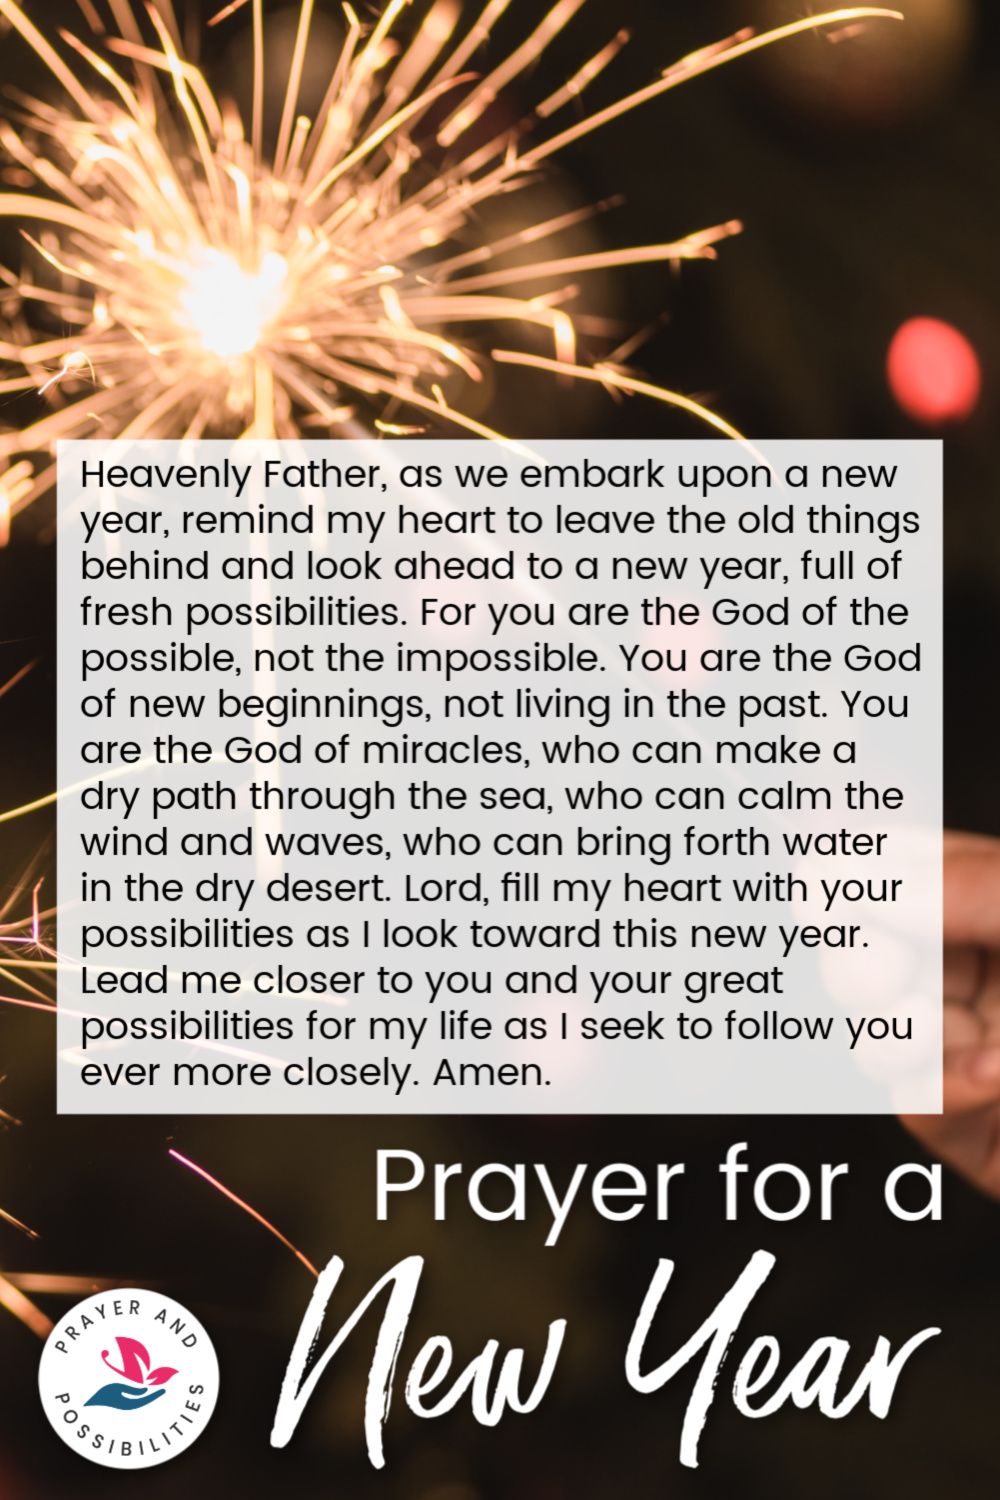 New Year Prayer For Your Boyfriend